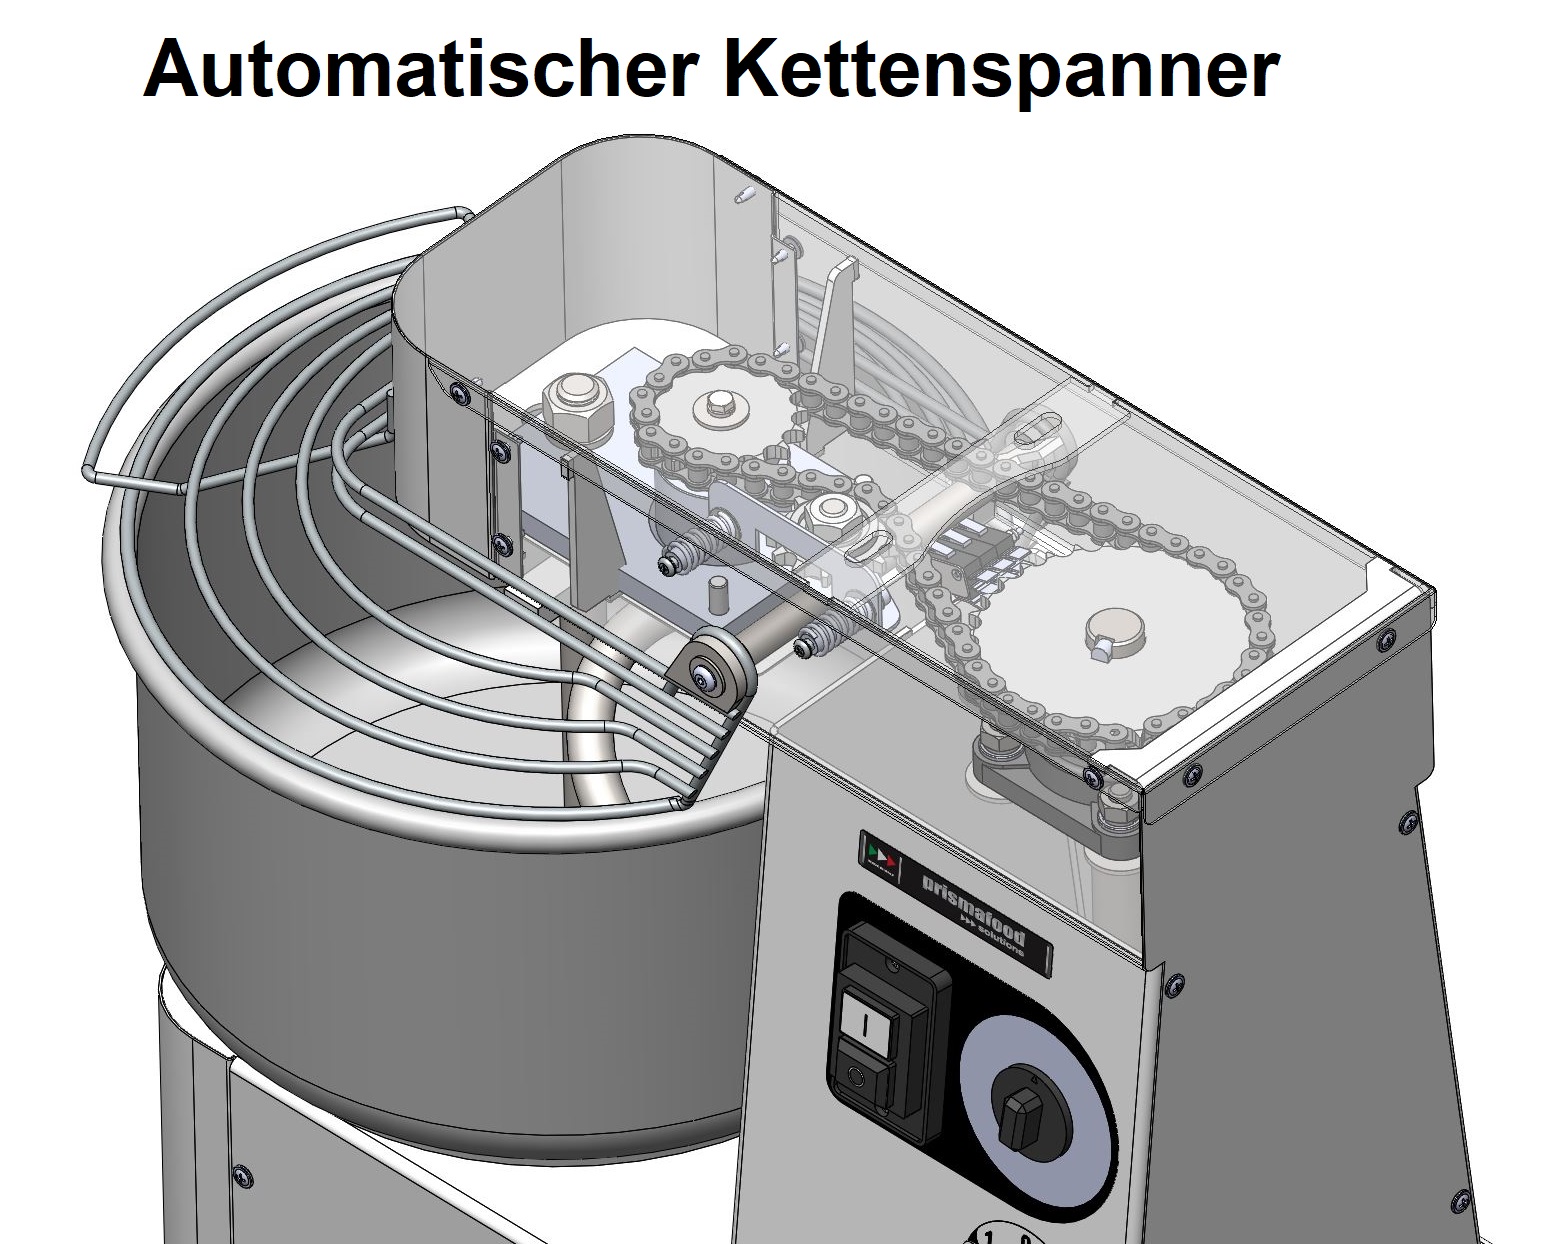 Spiralteigknetmaschine IMR automatischer Kettenspanner